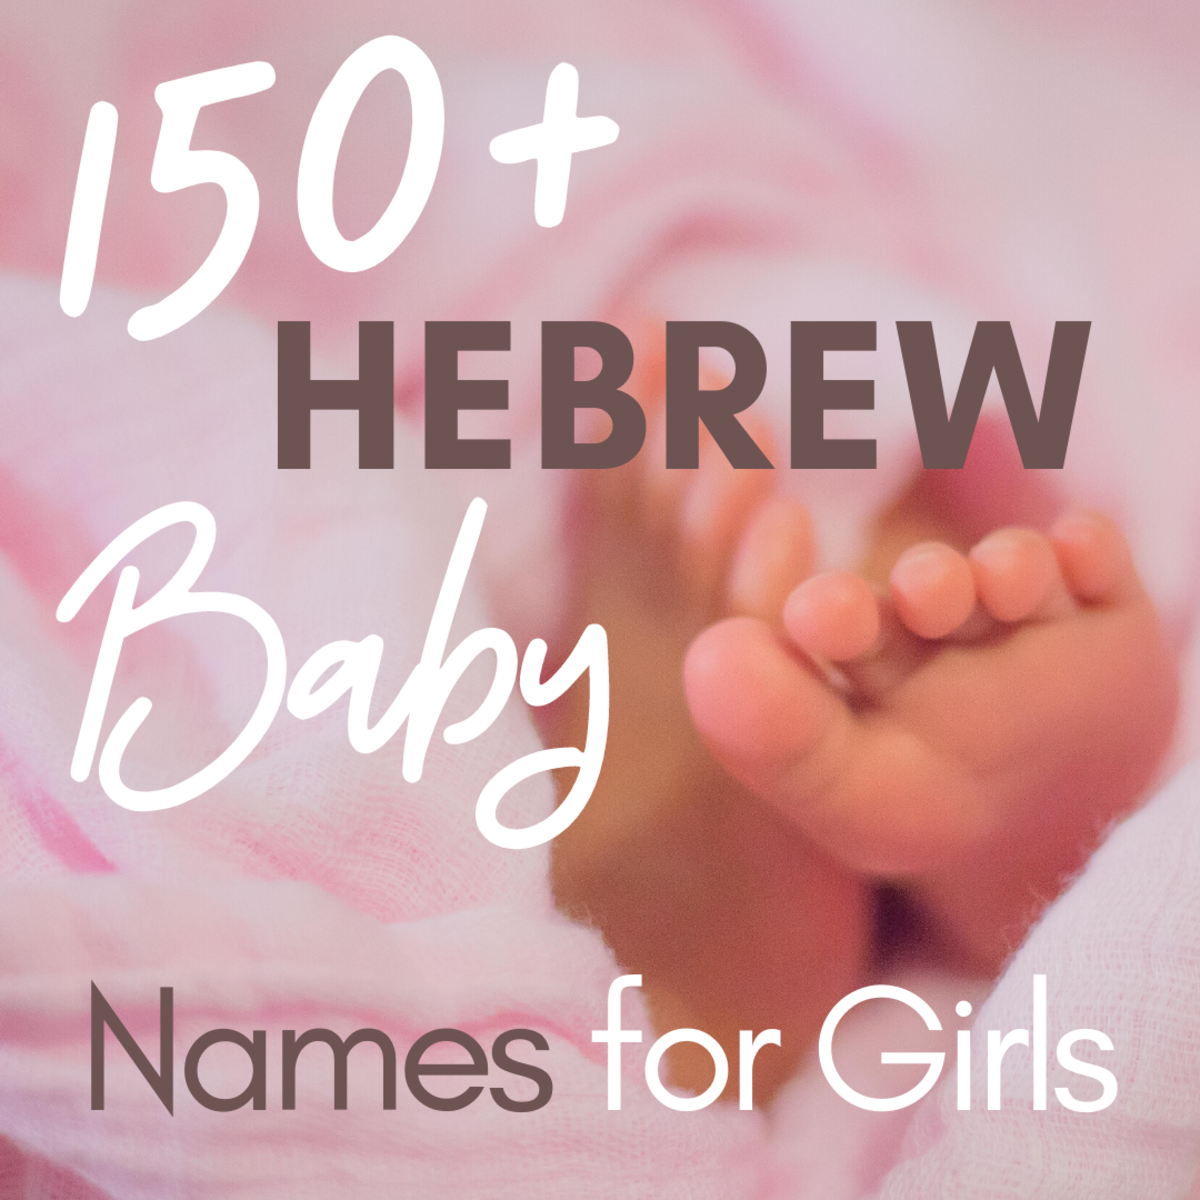 Nomi ebraici per ragazze e loro significato